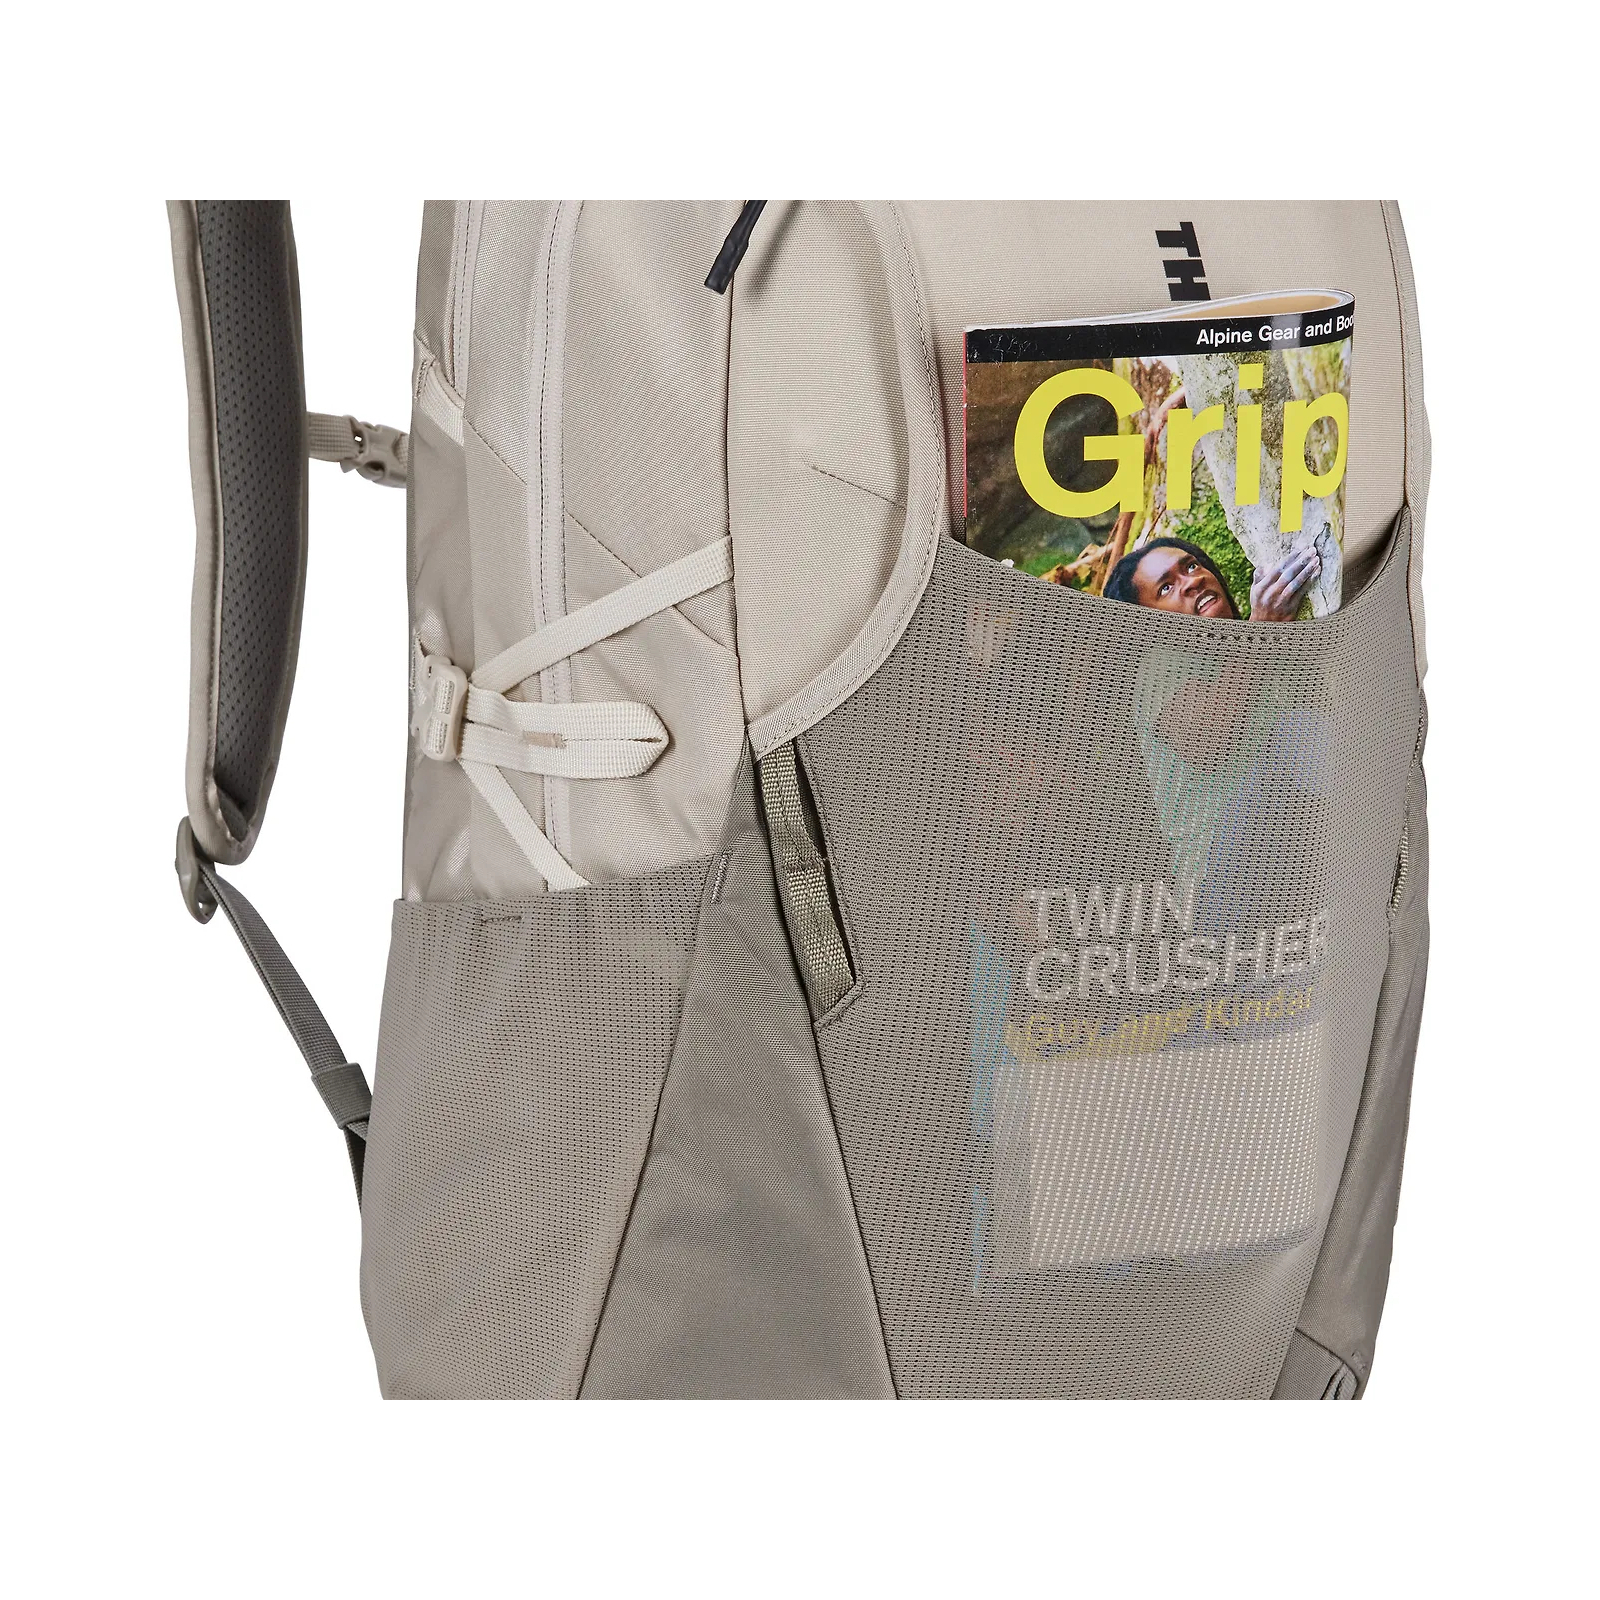 Рюкзак для ноутбука Thule 15.6" EnRoute 26L TEBP4316 Mallard Green (3204847) изображение 8